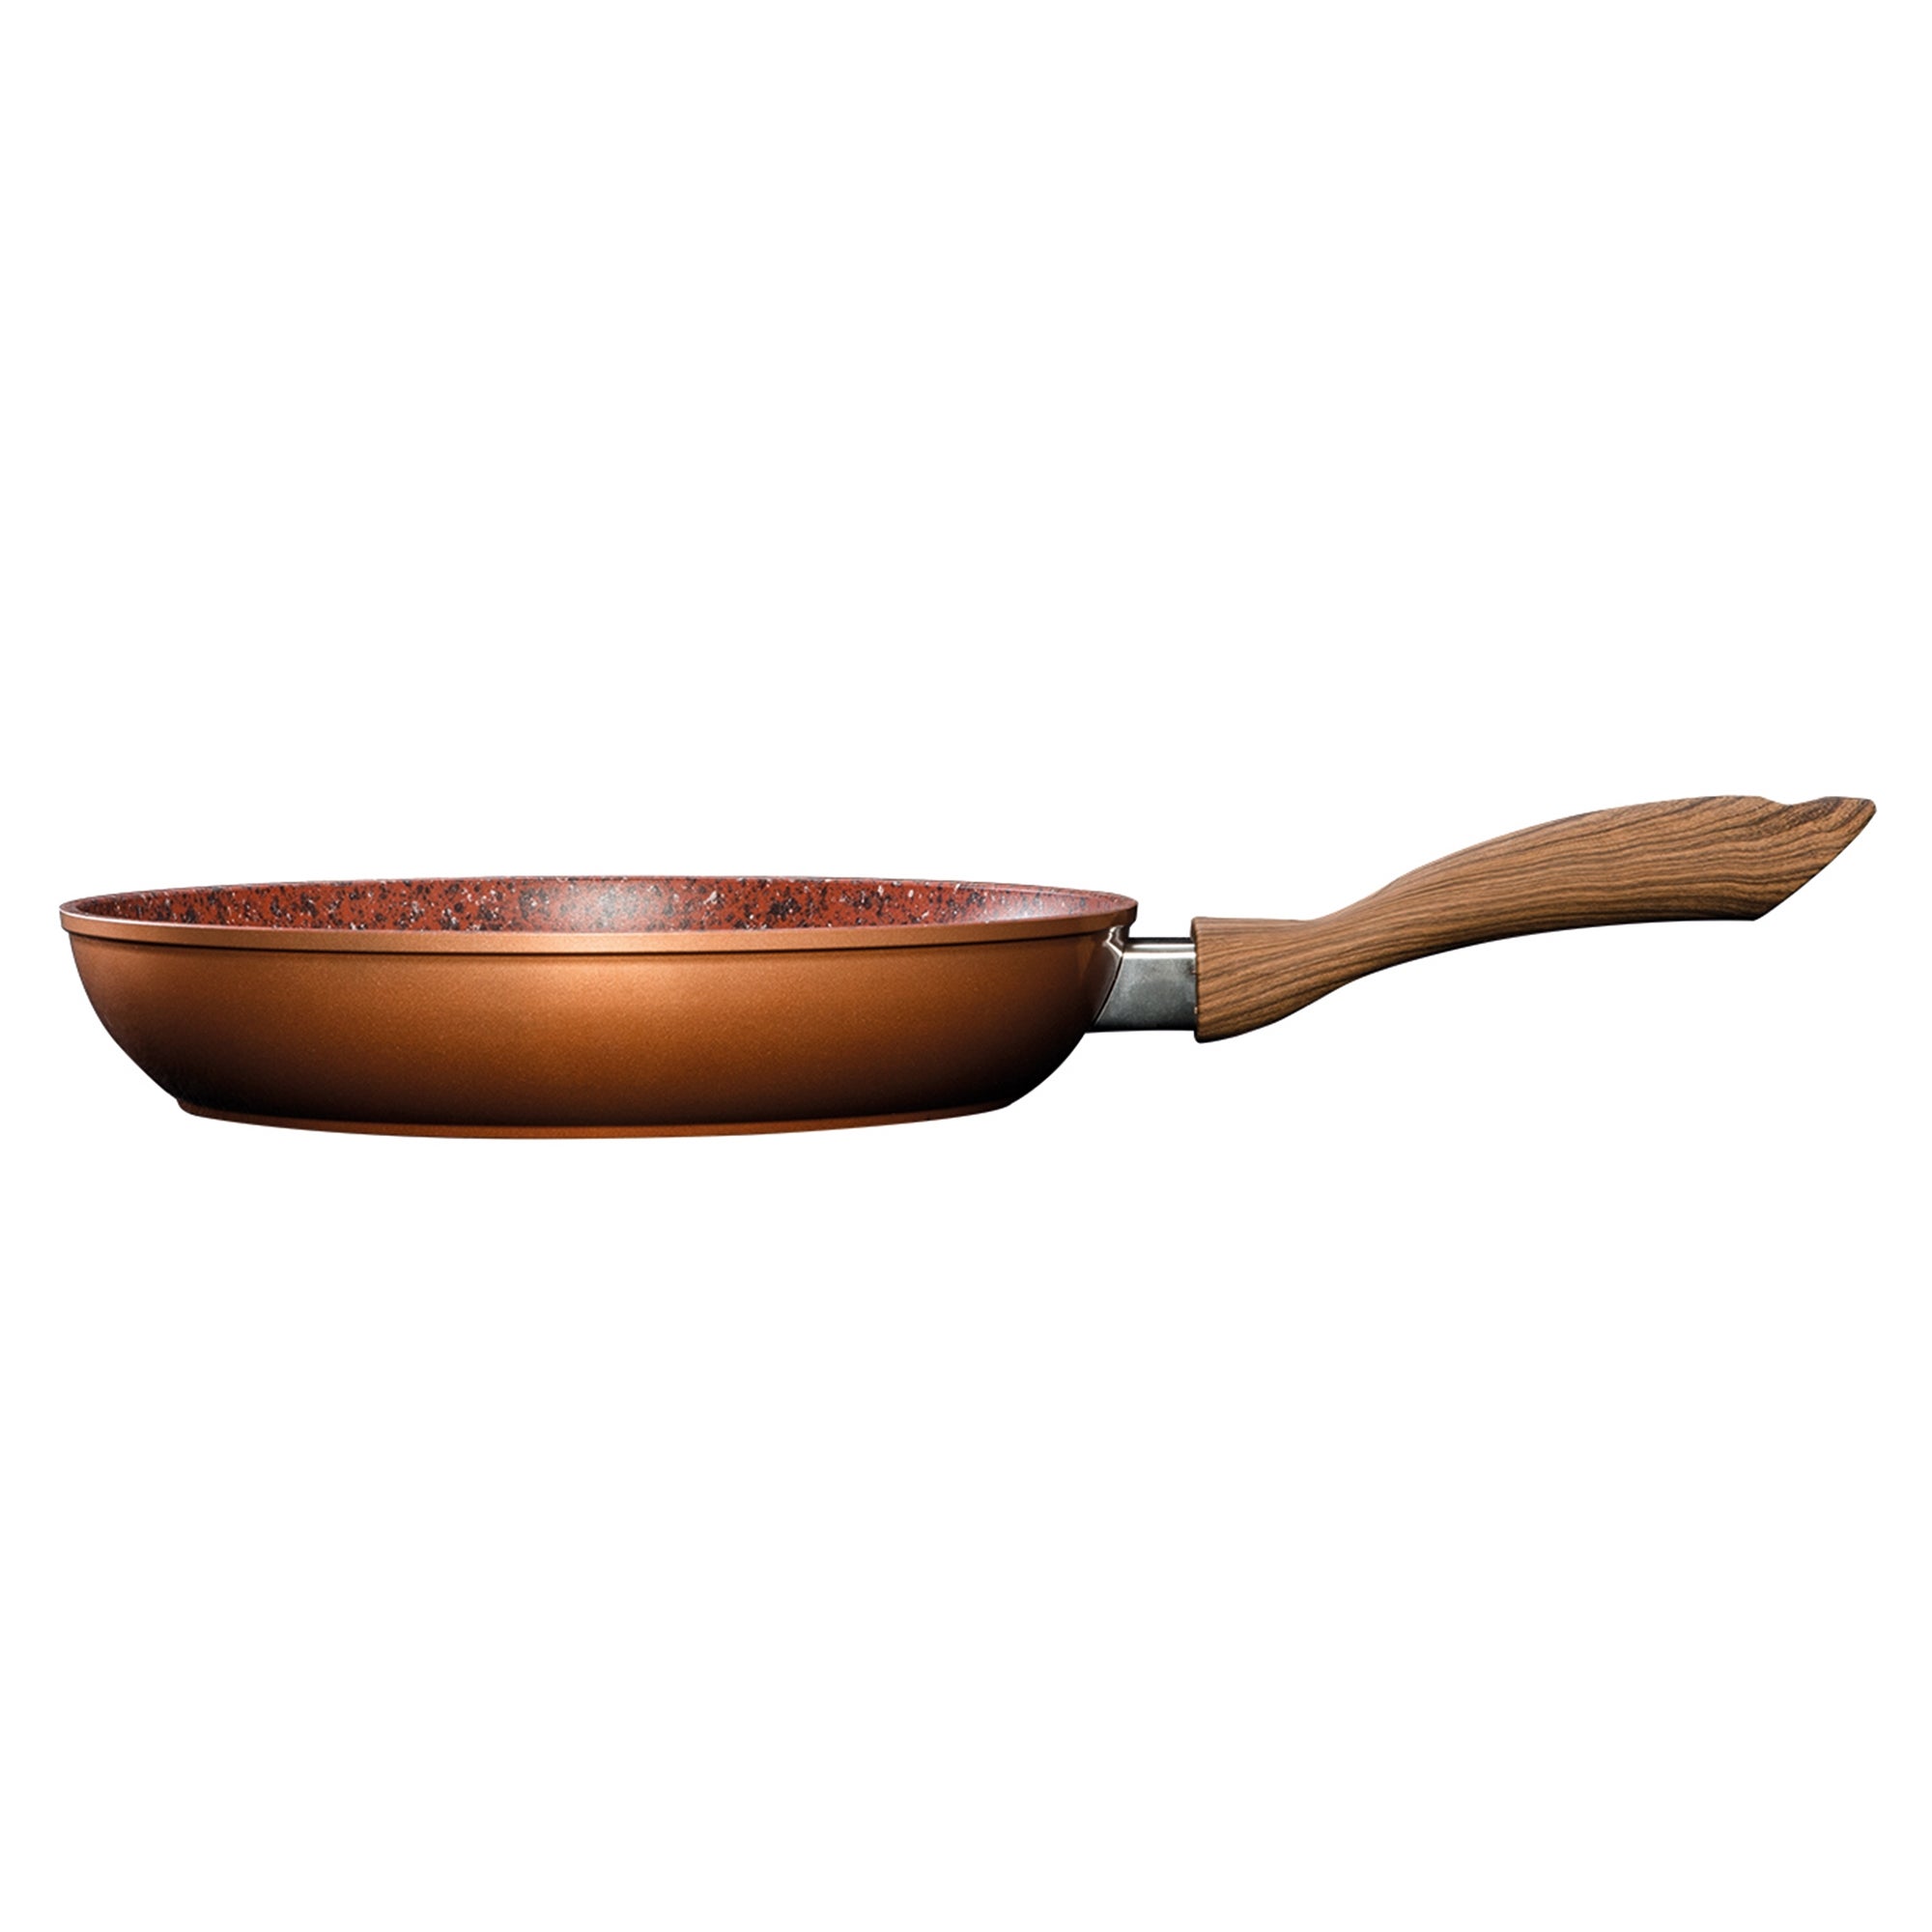 JML Non Stick Copper Stone Griddle Pan